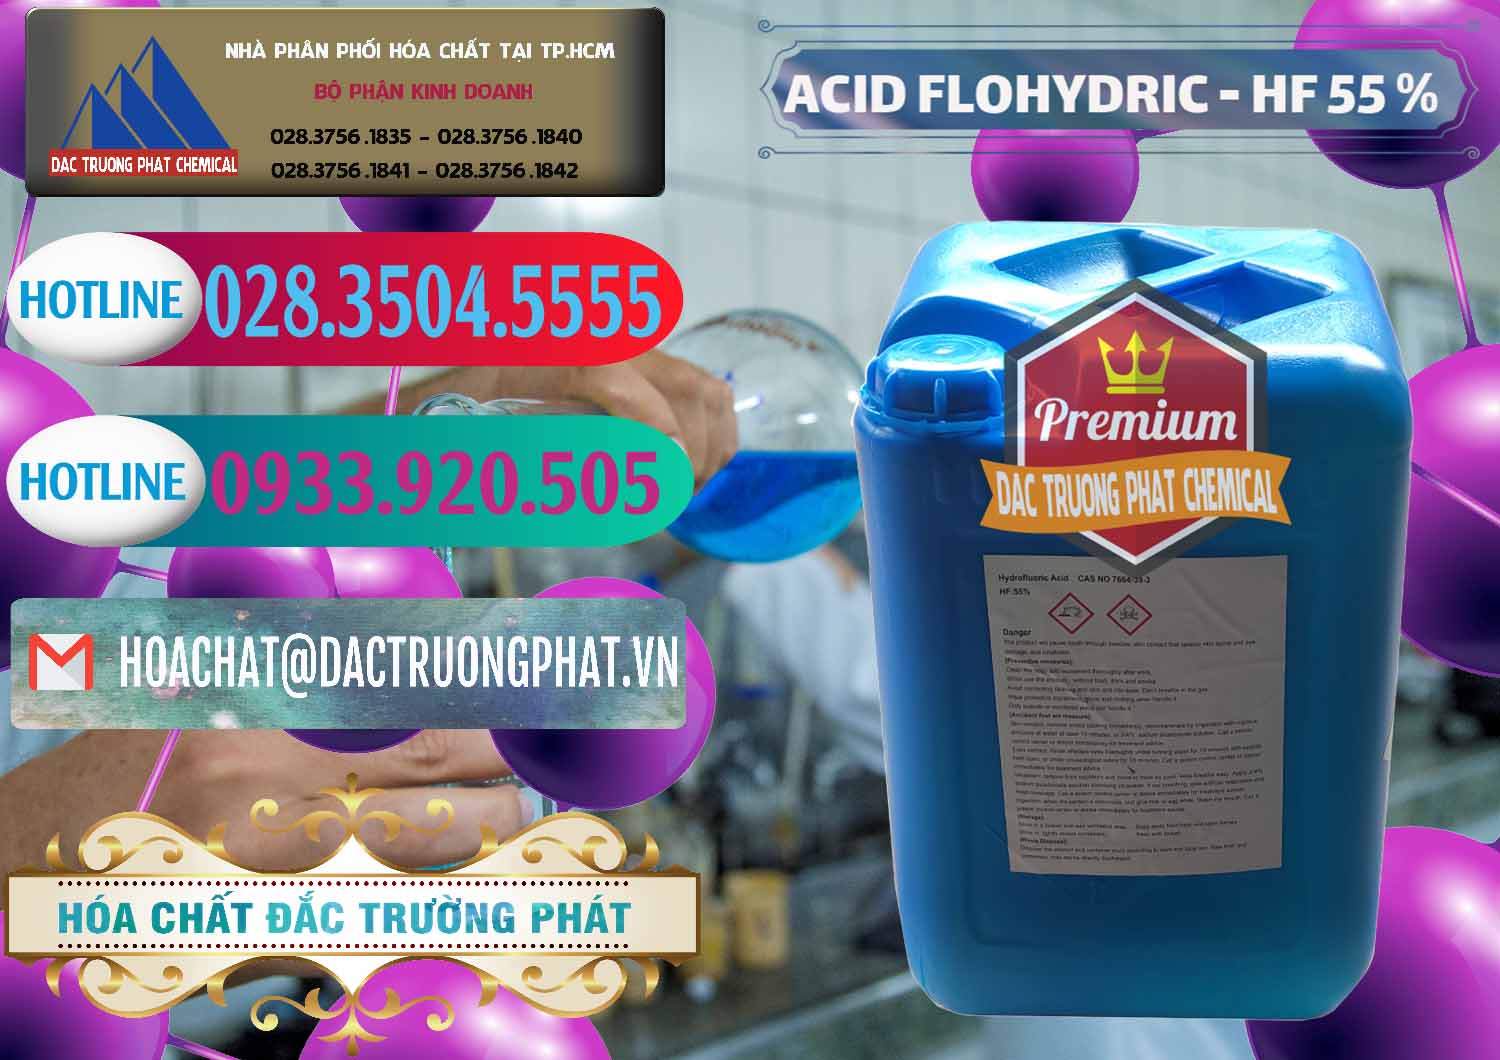 Cty bán & phân phối Axit HF - Acid HF 55% Can Xanh Trung Quốc China - 0080 - Đơn vị nhập khẩu & cung cấp hóa chất tại TP.HCM - truongphat.vn